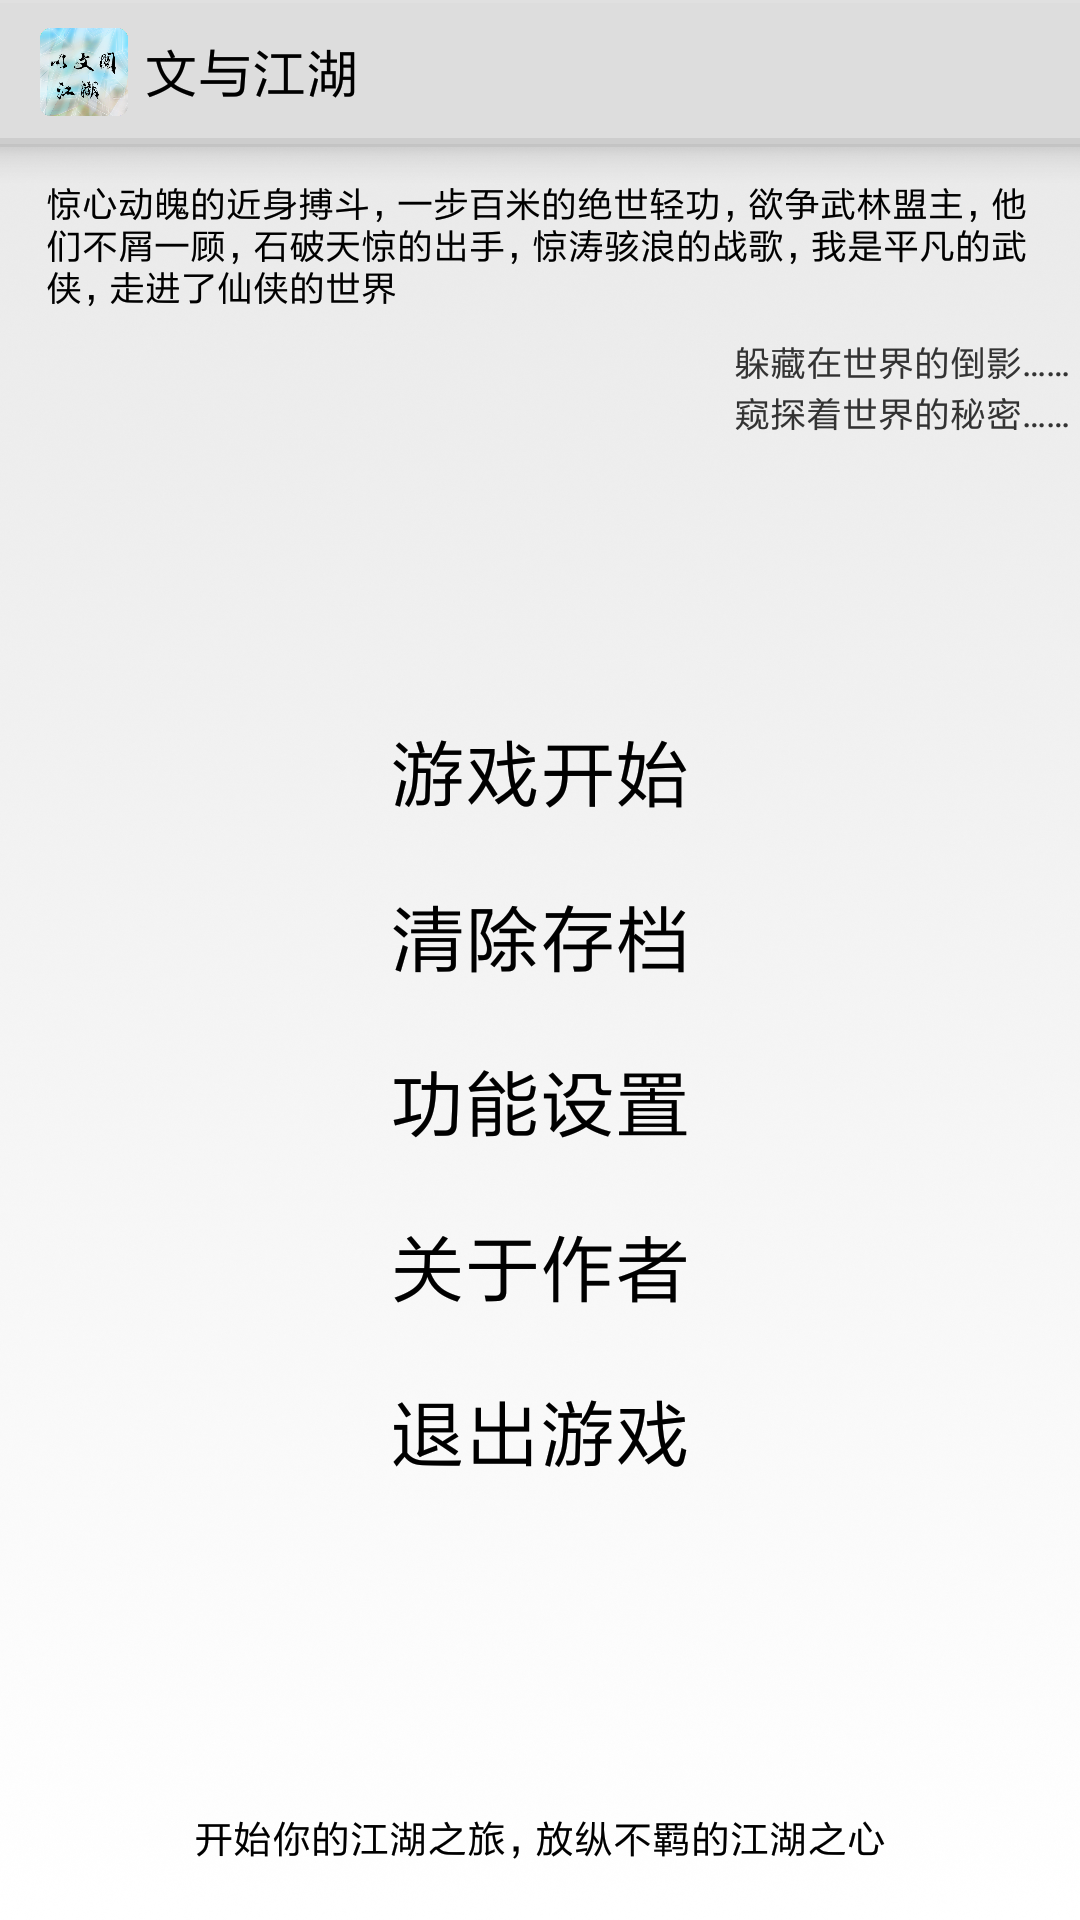 Screenshot 1 of Wen e Jianghu 6.7